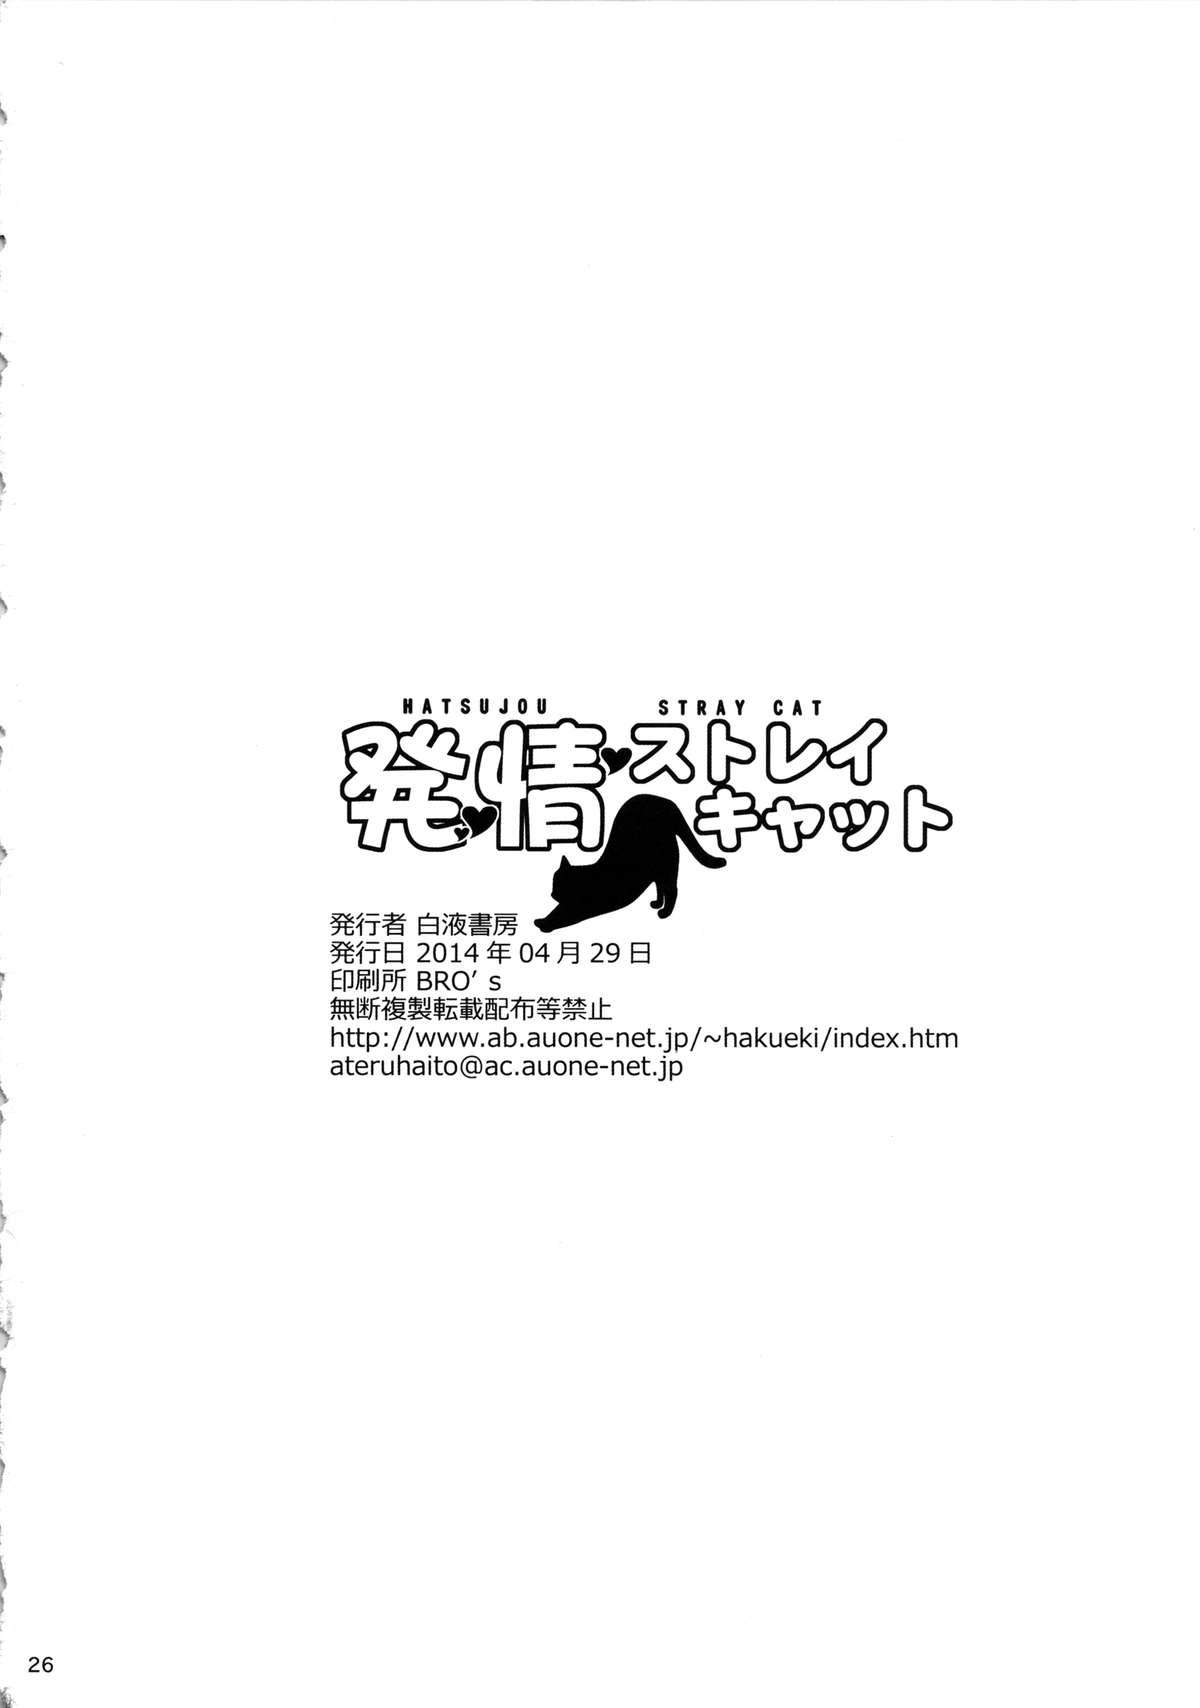 Hatsujou Stray Cat 24